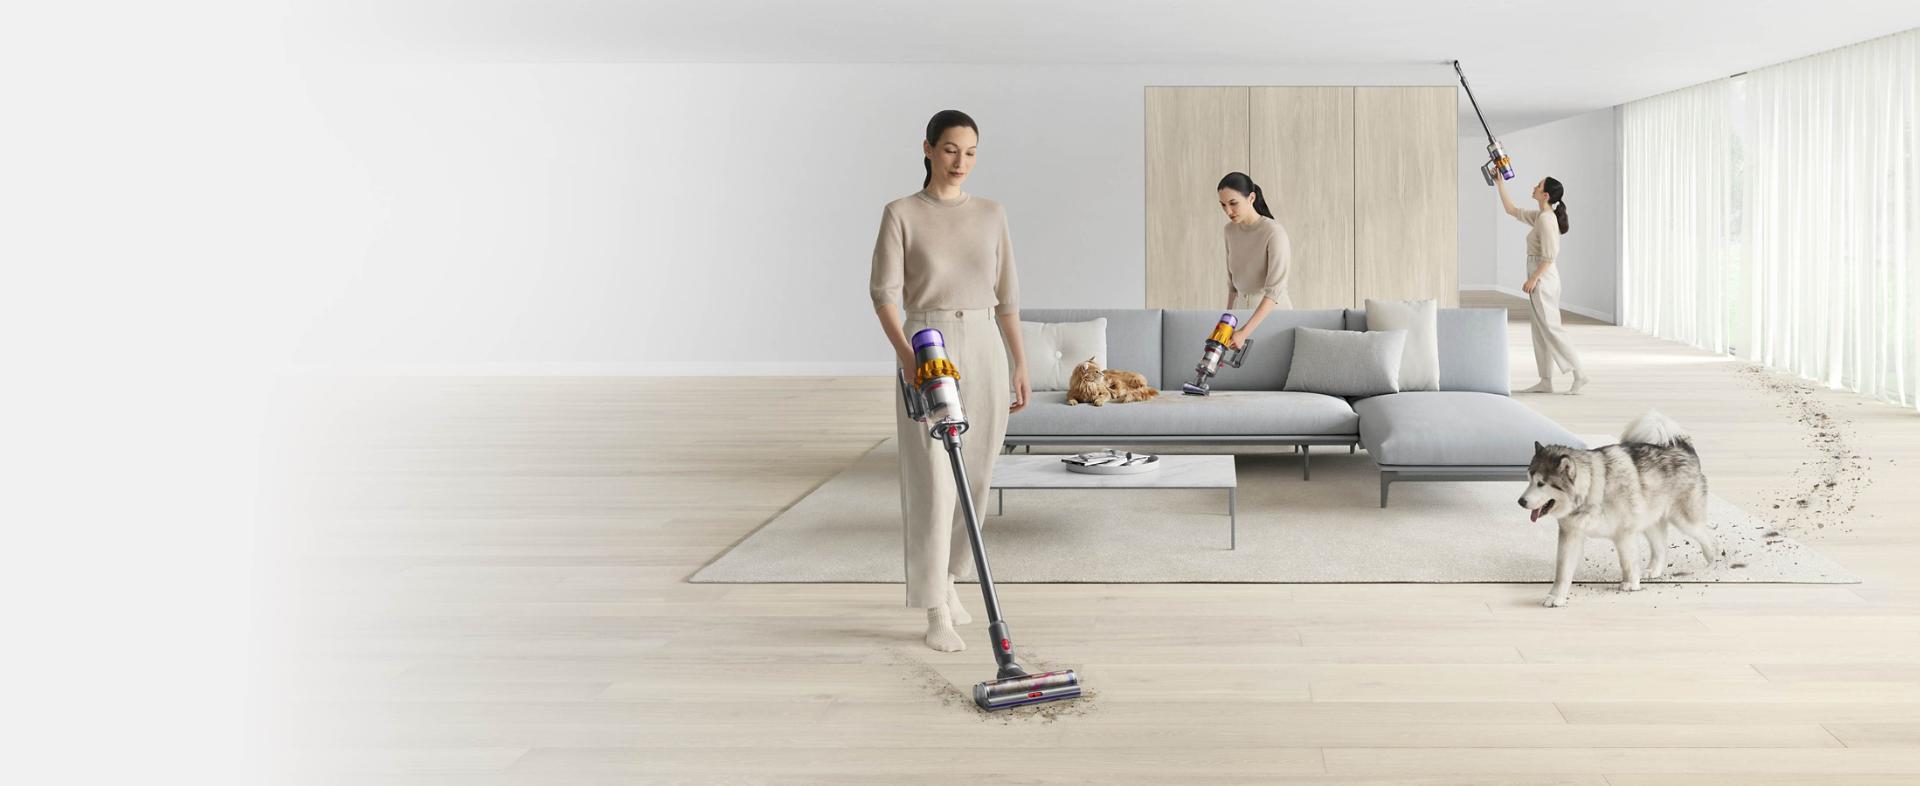 Svestrano čišćenje domova s kućnim ljubimcima koje omogućuje Dyson